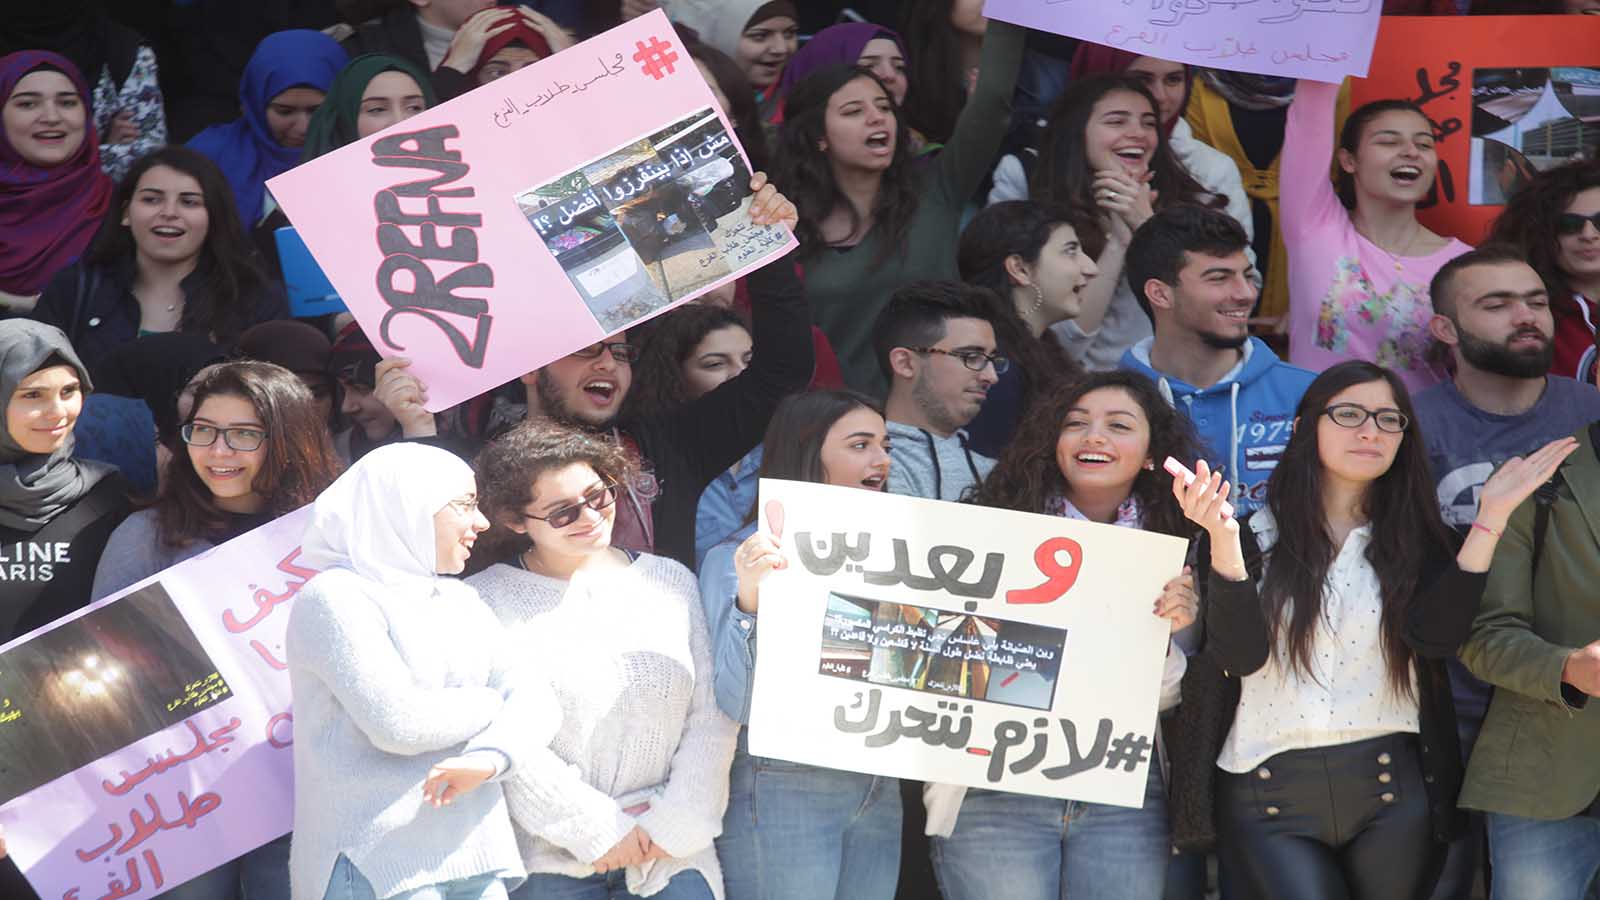 طلاب العلوم في "اللبنانية"- الحدث: "لازم نتحرك"